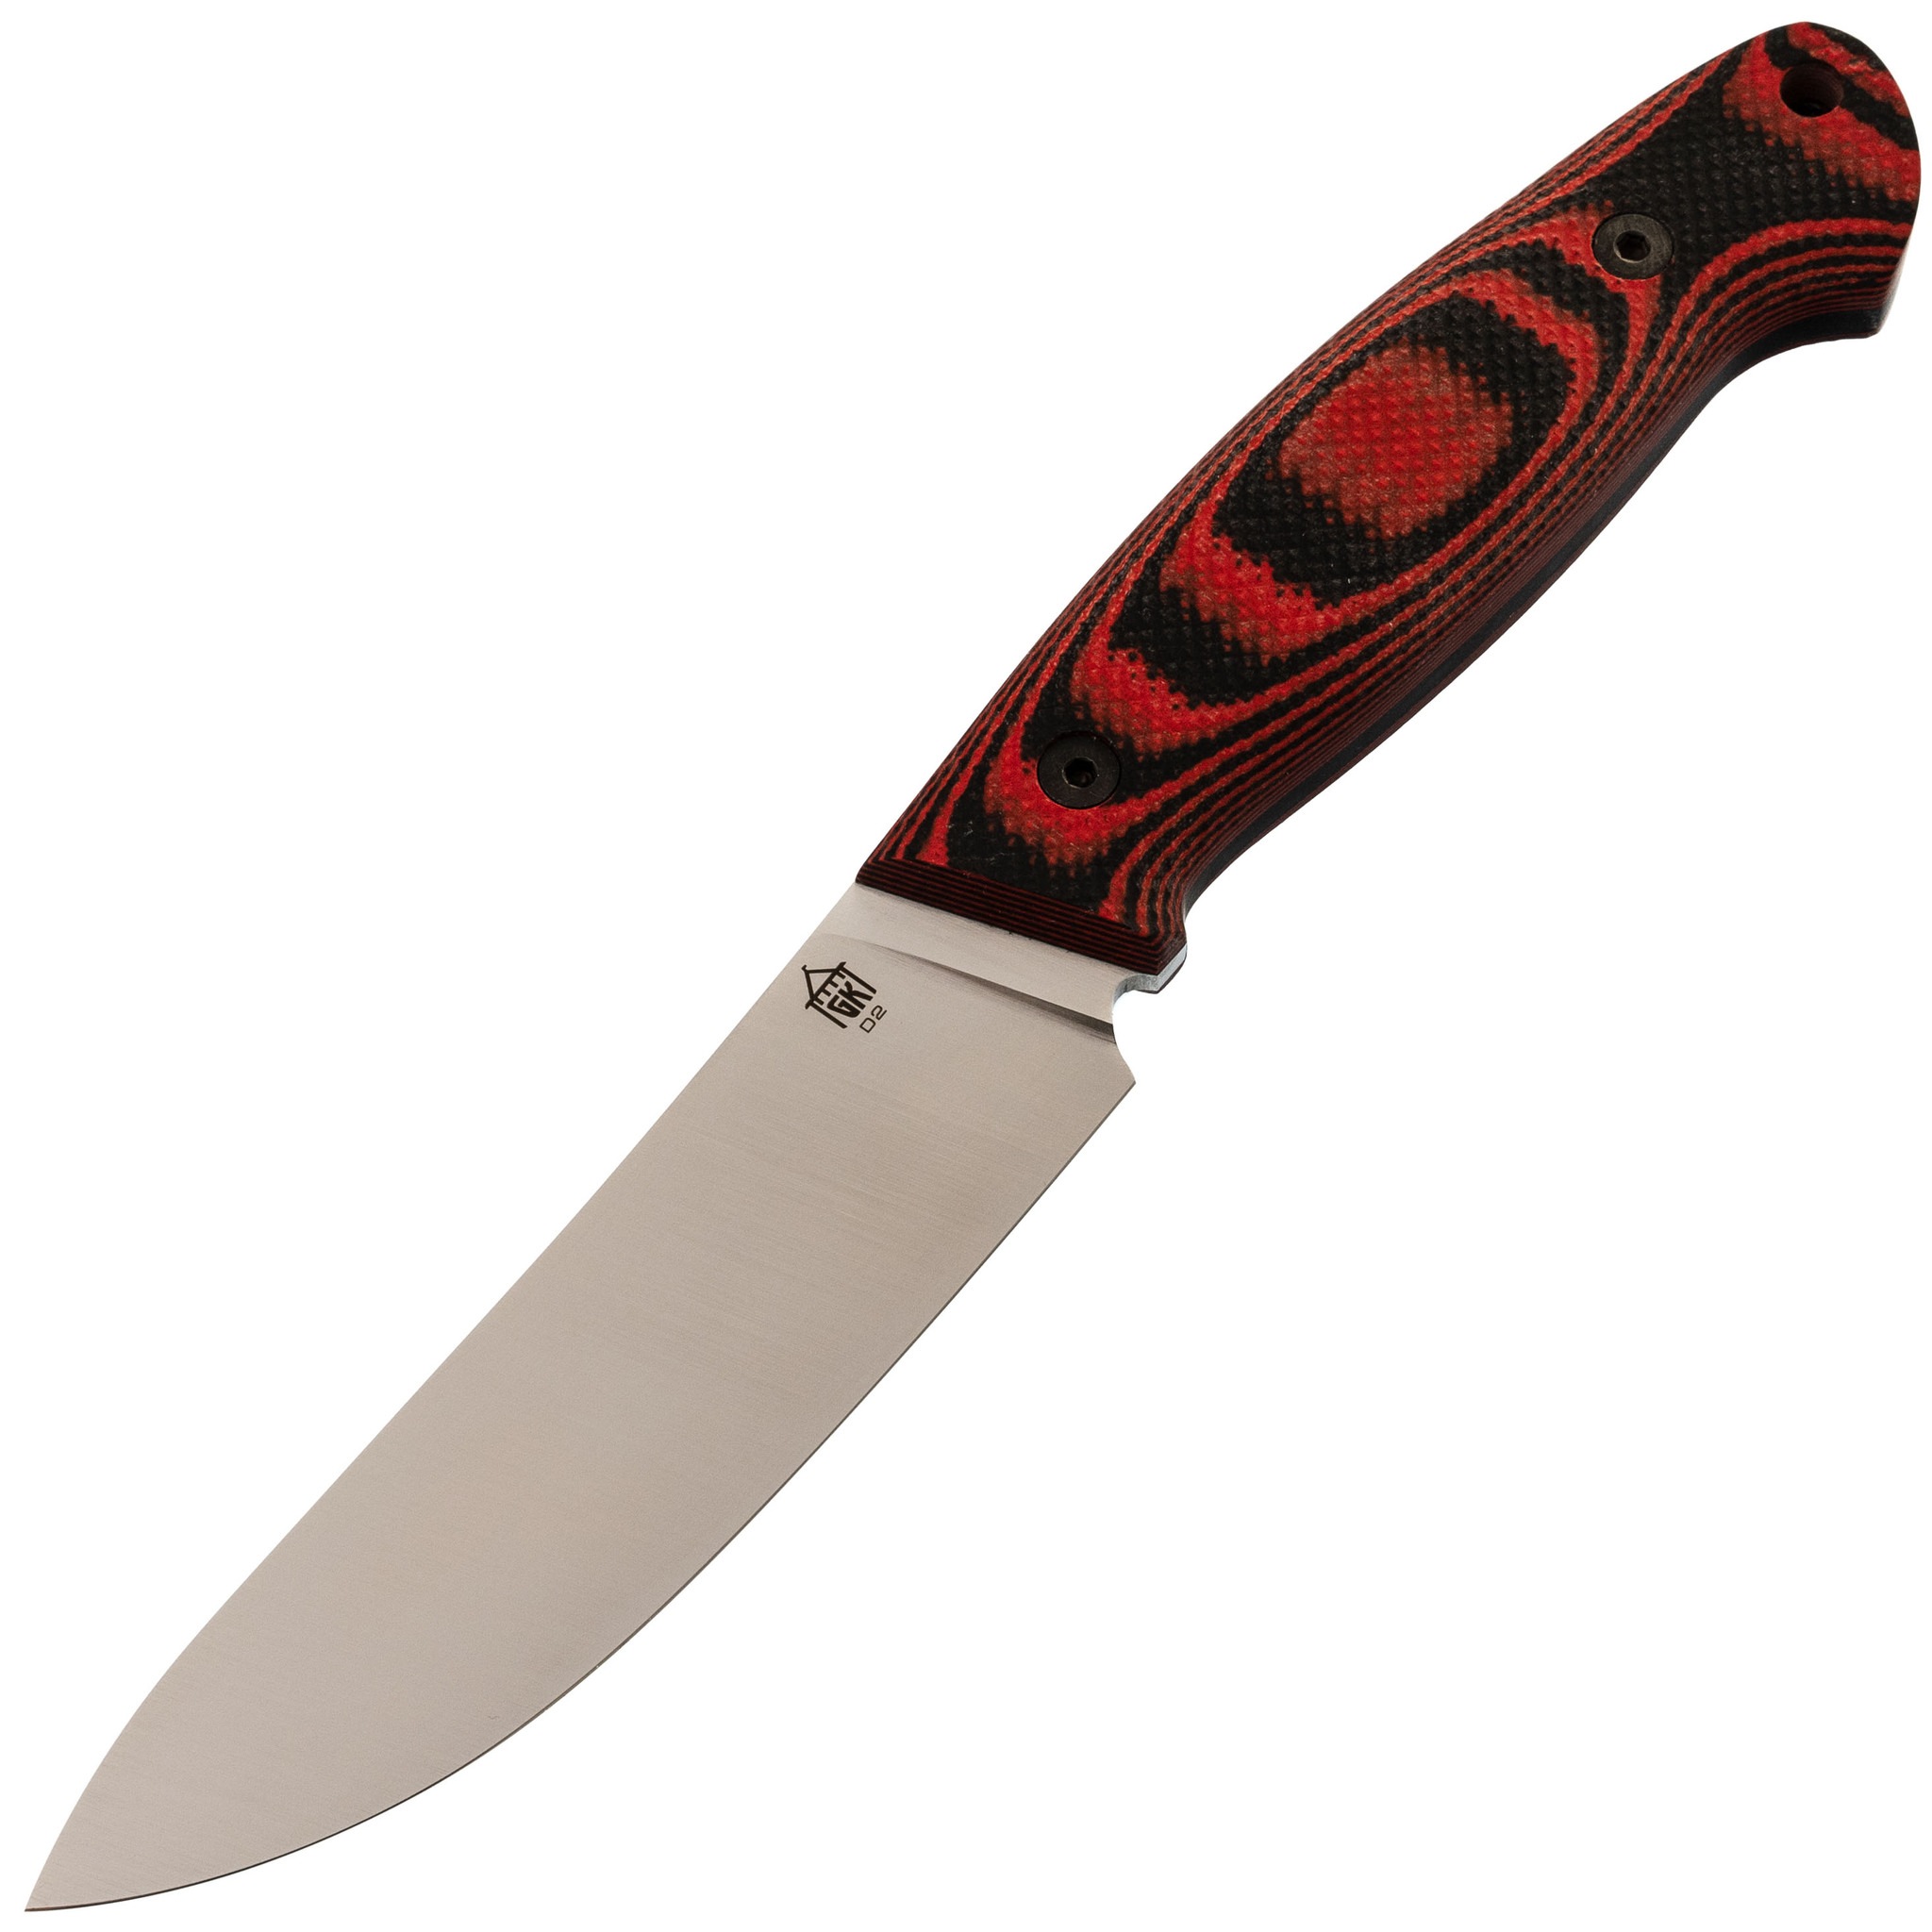 Нож Охотник, сталь D2, рукоять G10 черно-красная нож складной al mar nomad kirk rexroat design сталь vg 10 рукоять стеклотекстолит g 10